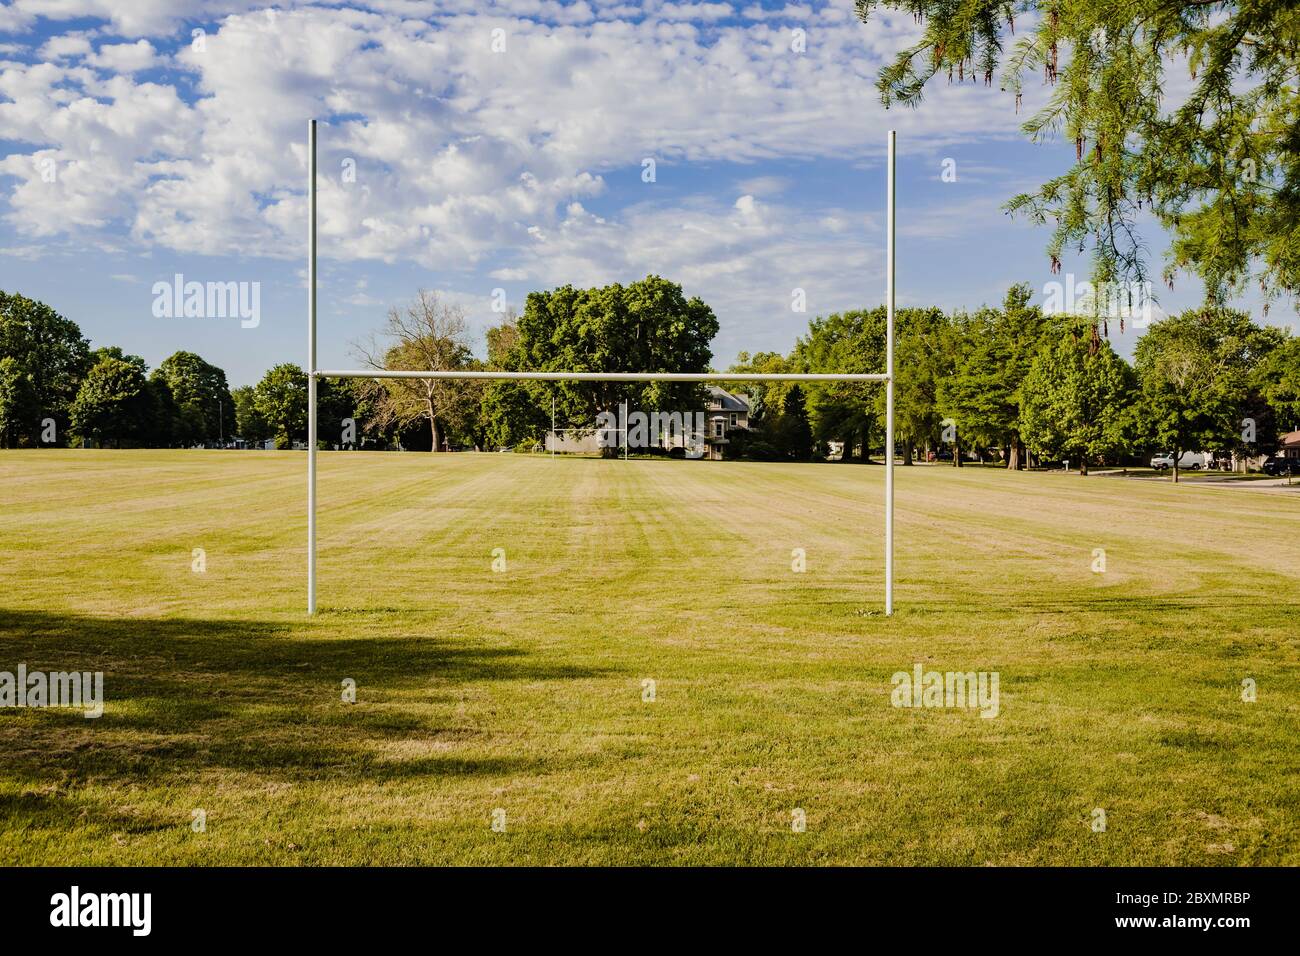 la vue depuis la zone finale d'un terrain de football pour jeunes dans un parc de la ville Banque D'Images